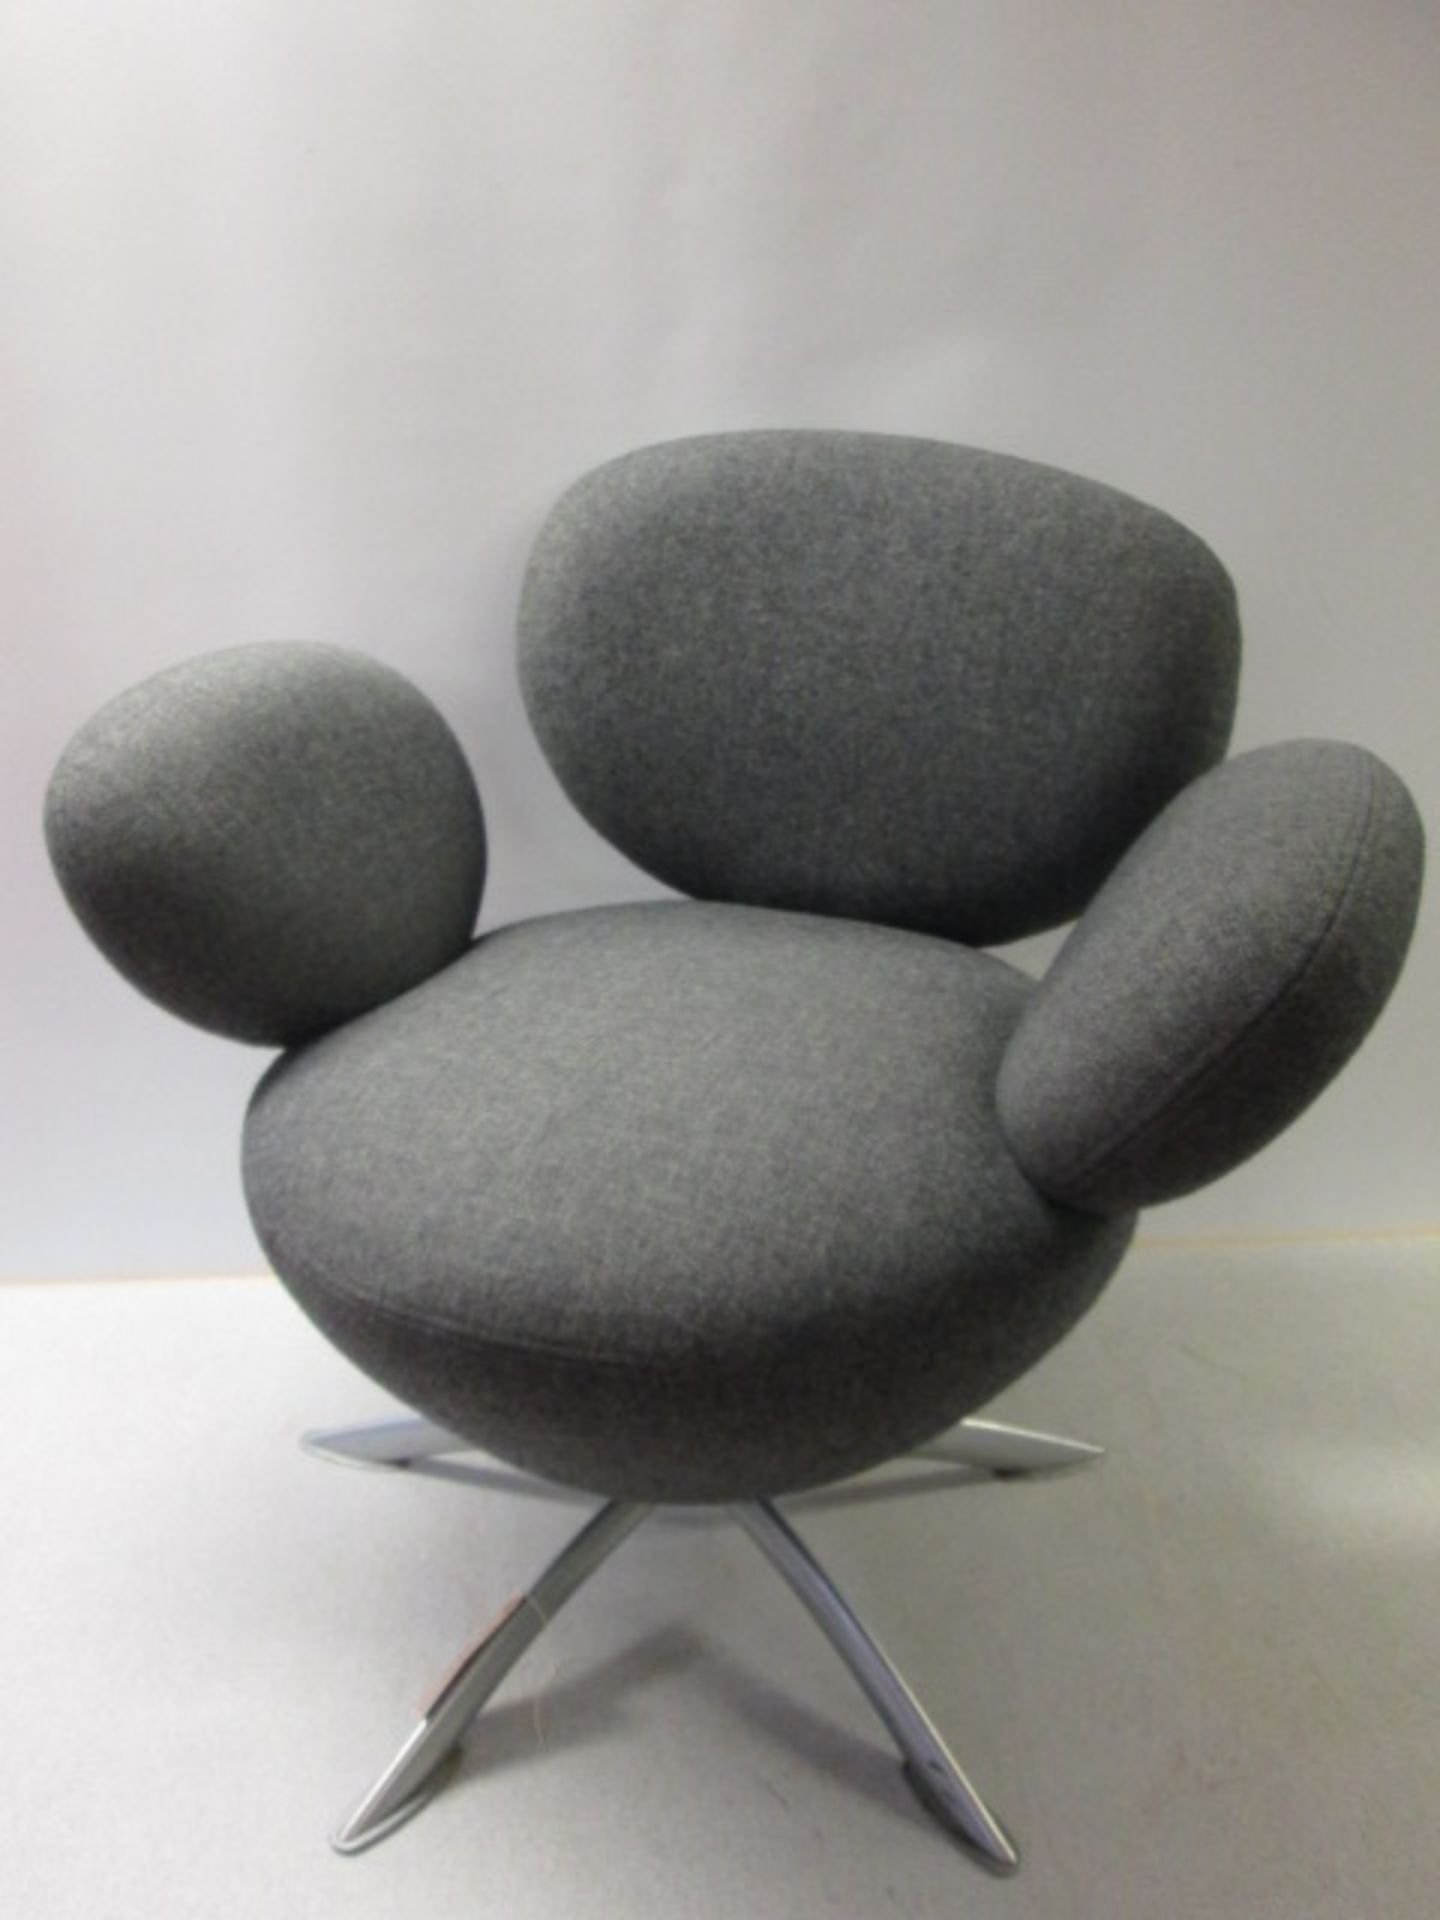 Funky Designer Style 5 Spoke Swivel Chair in Grey Fabric.